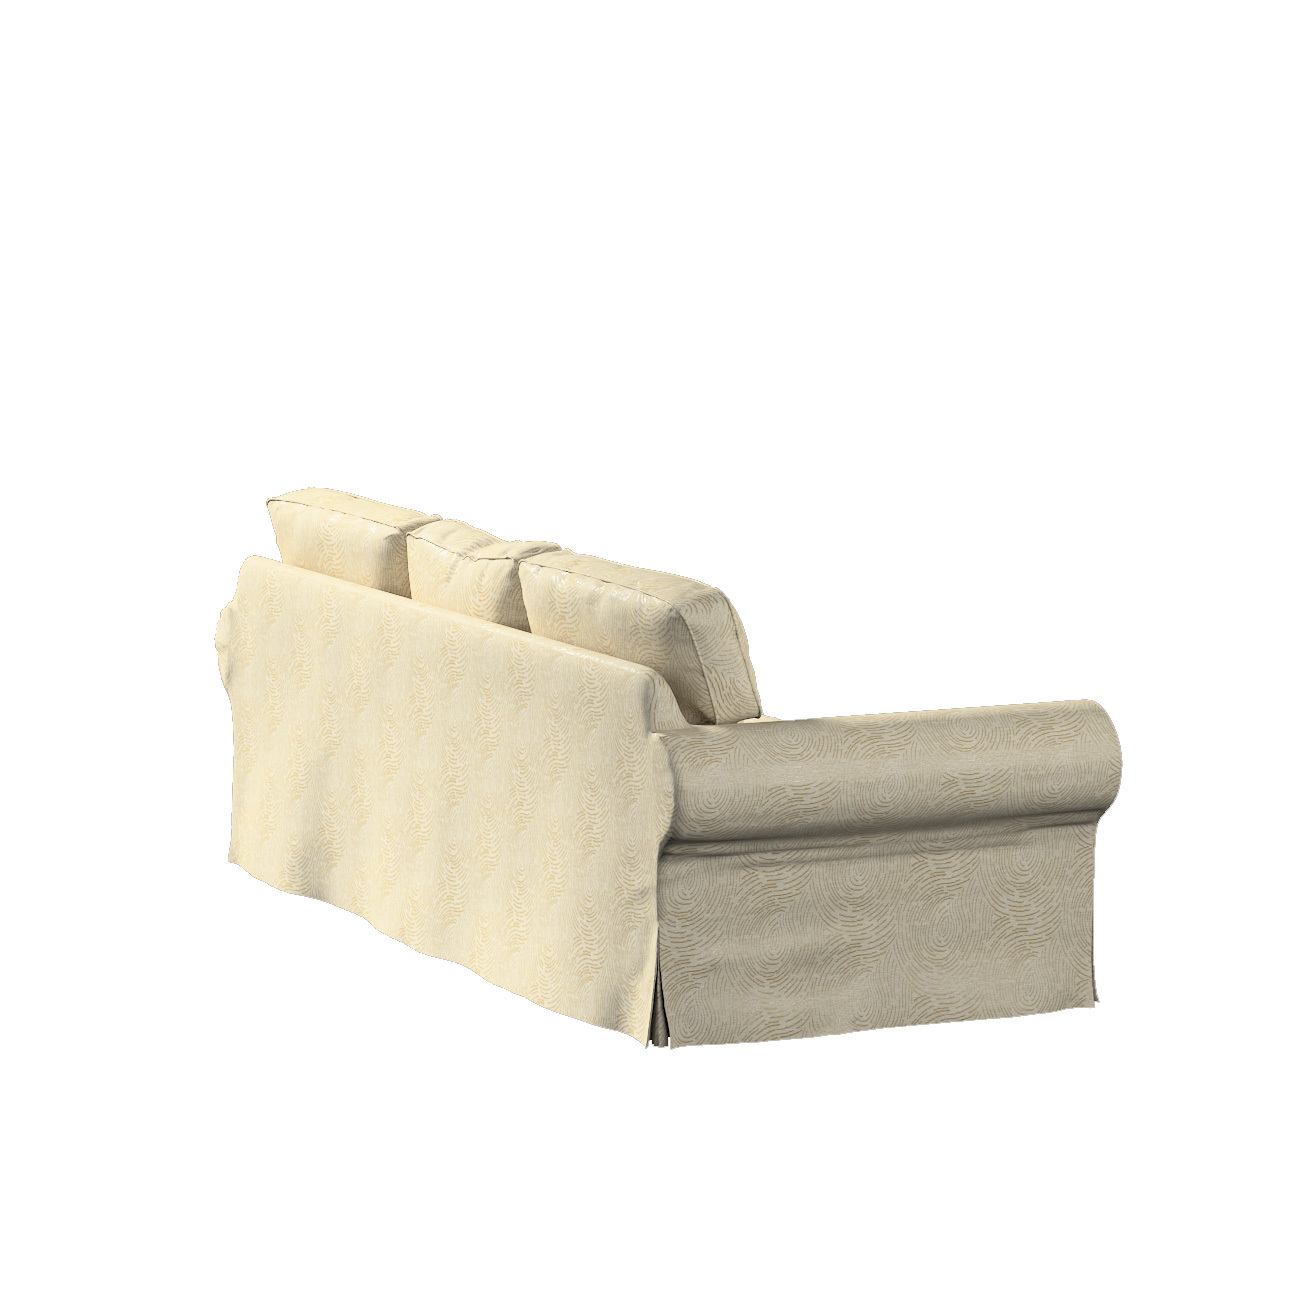 Bezug für Ektorp 3-Sitzer Schlafsofa, neues Modell (2013), beige-golden, 40 günstig online kaufen